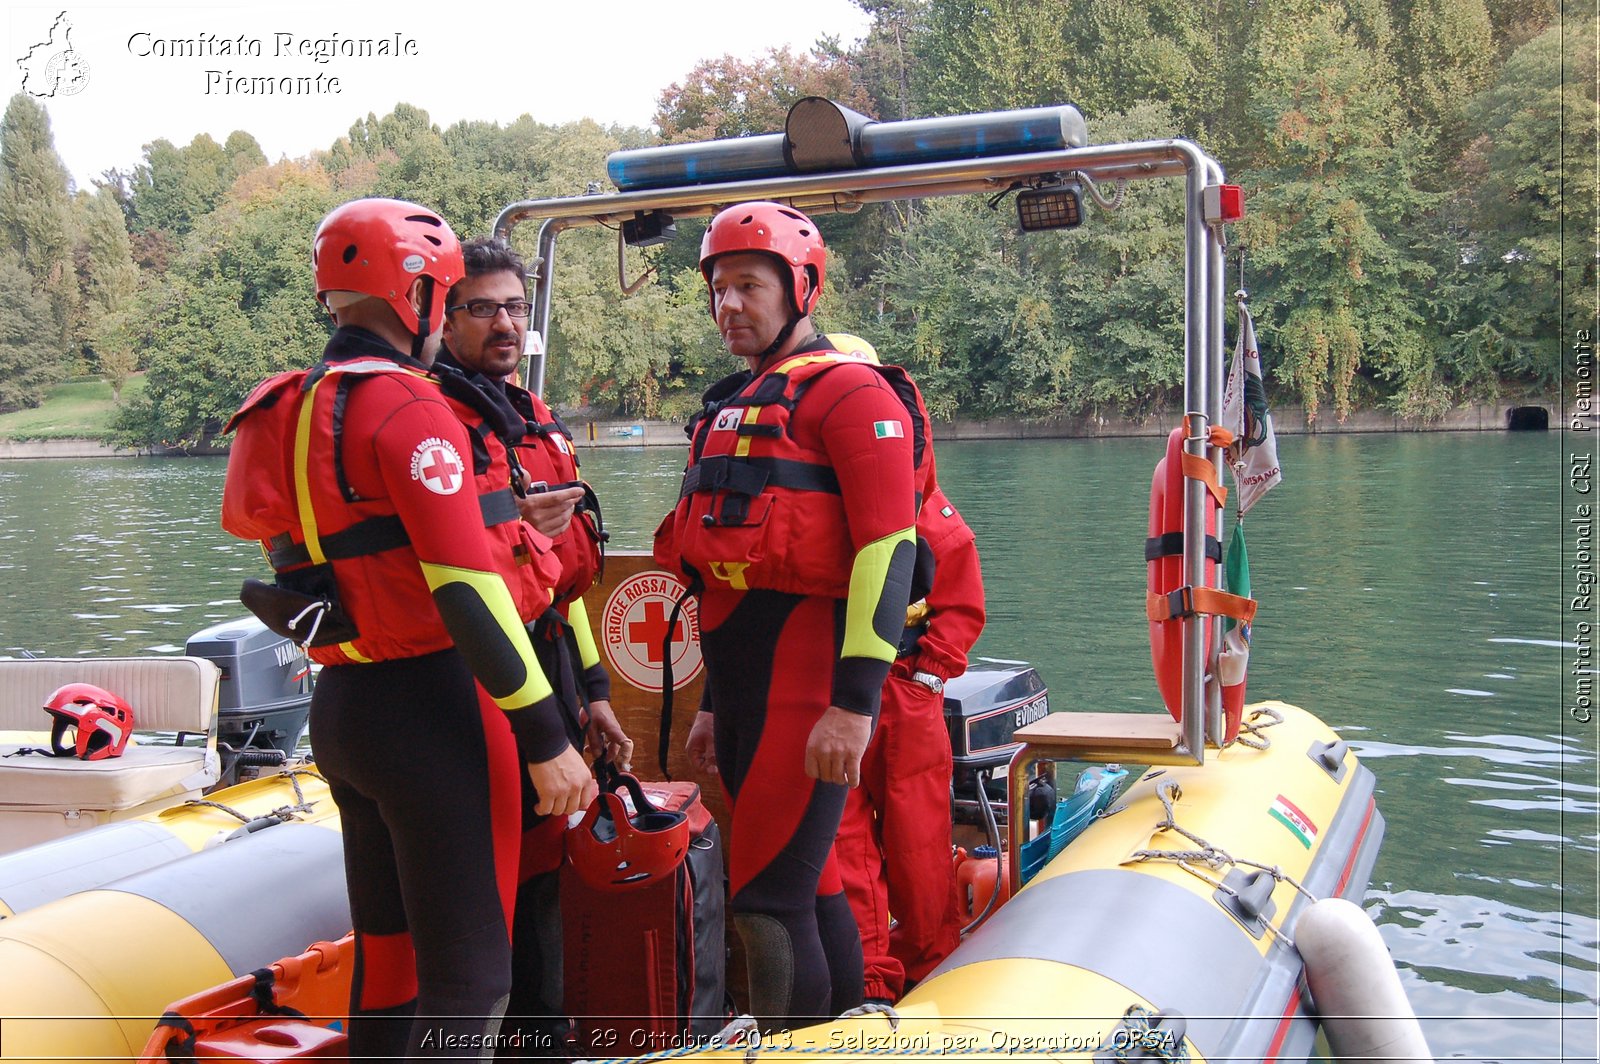 Alessandria - 29 Ottobre 2013 - Selezioni per Operatori OPSA - Comitato Regionale del Piemonte